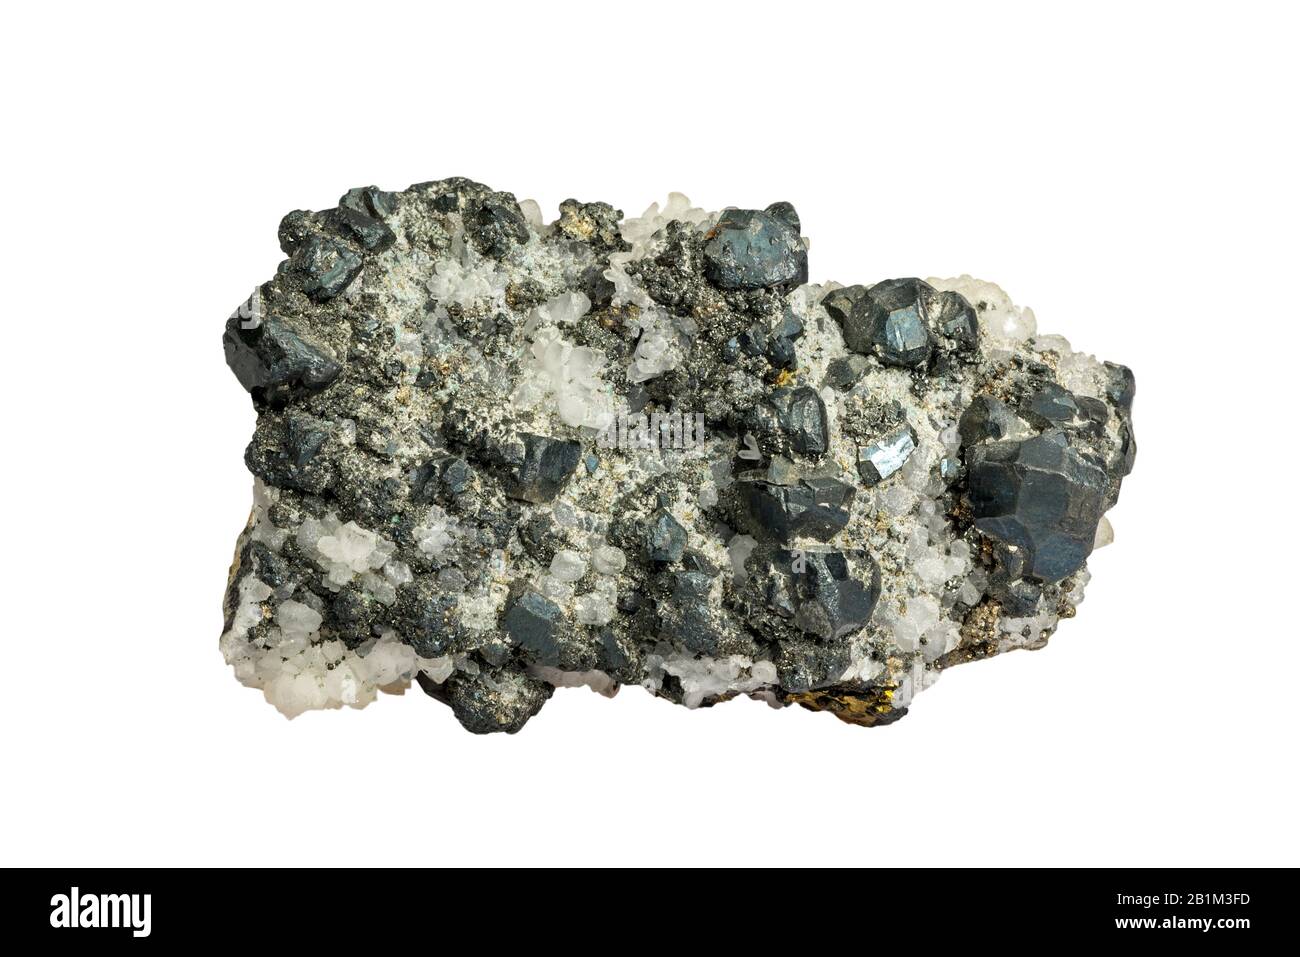 Tennantit, Kupfer-Arsen-Sulfosaltmineral, in Zacatecas, Mexiko vor weißem Hintergrund gefunden Stockfoto